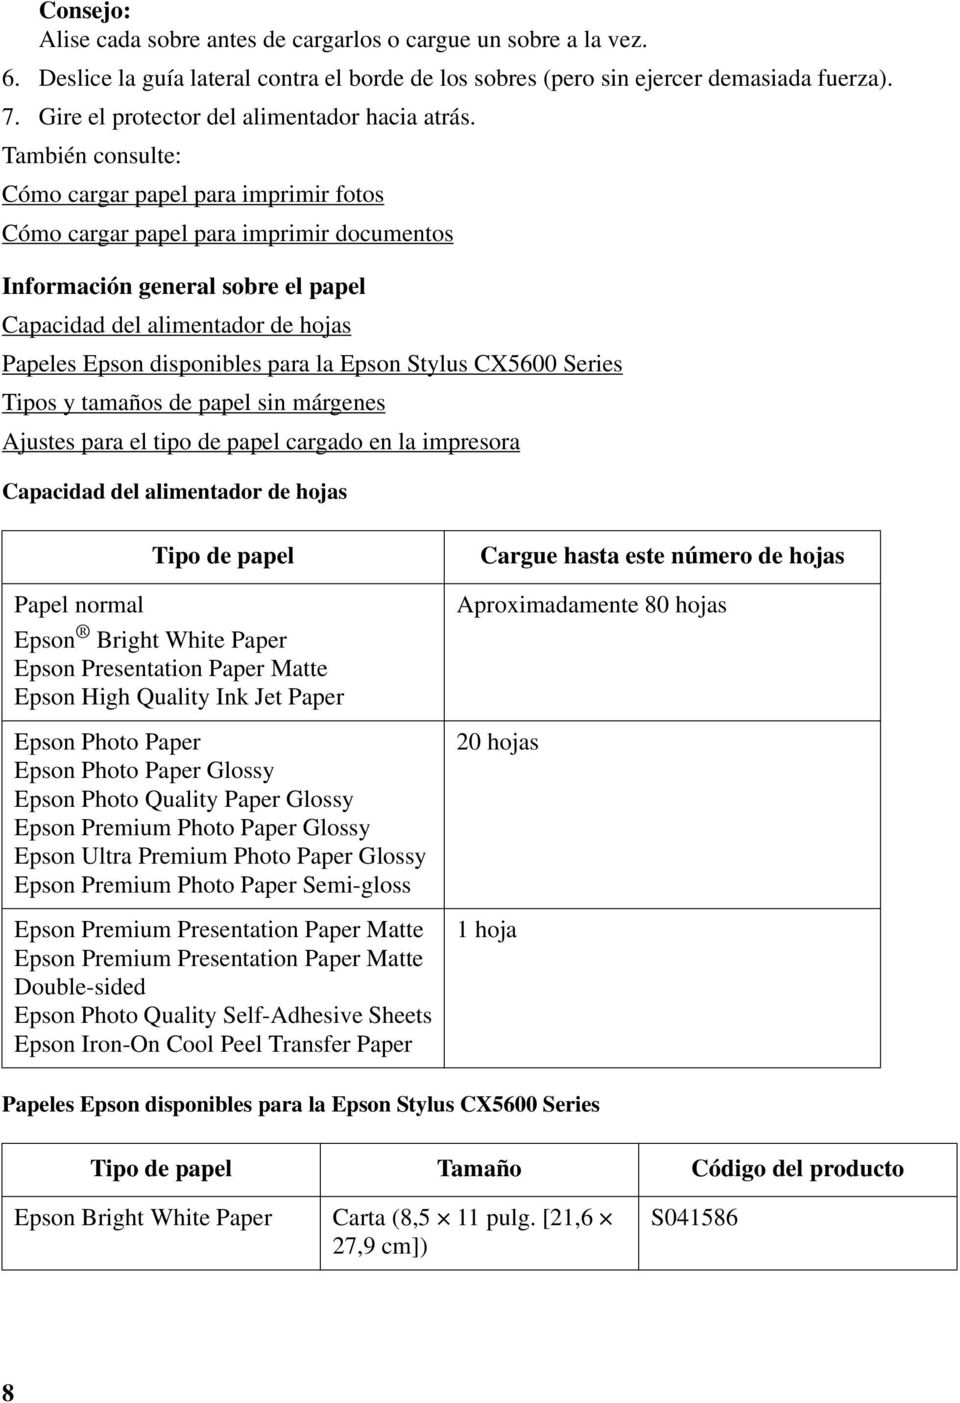 También consulte: Cómo cargar papel para imprimir fotos Cómo cargar papel para imprimir documentos Información general sobre el papel Capacidad del alimentador de hojas Papeles Epson disponibles para